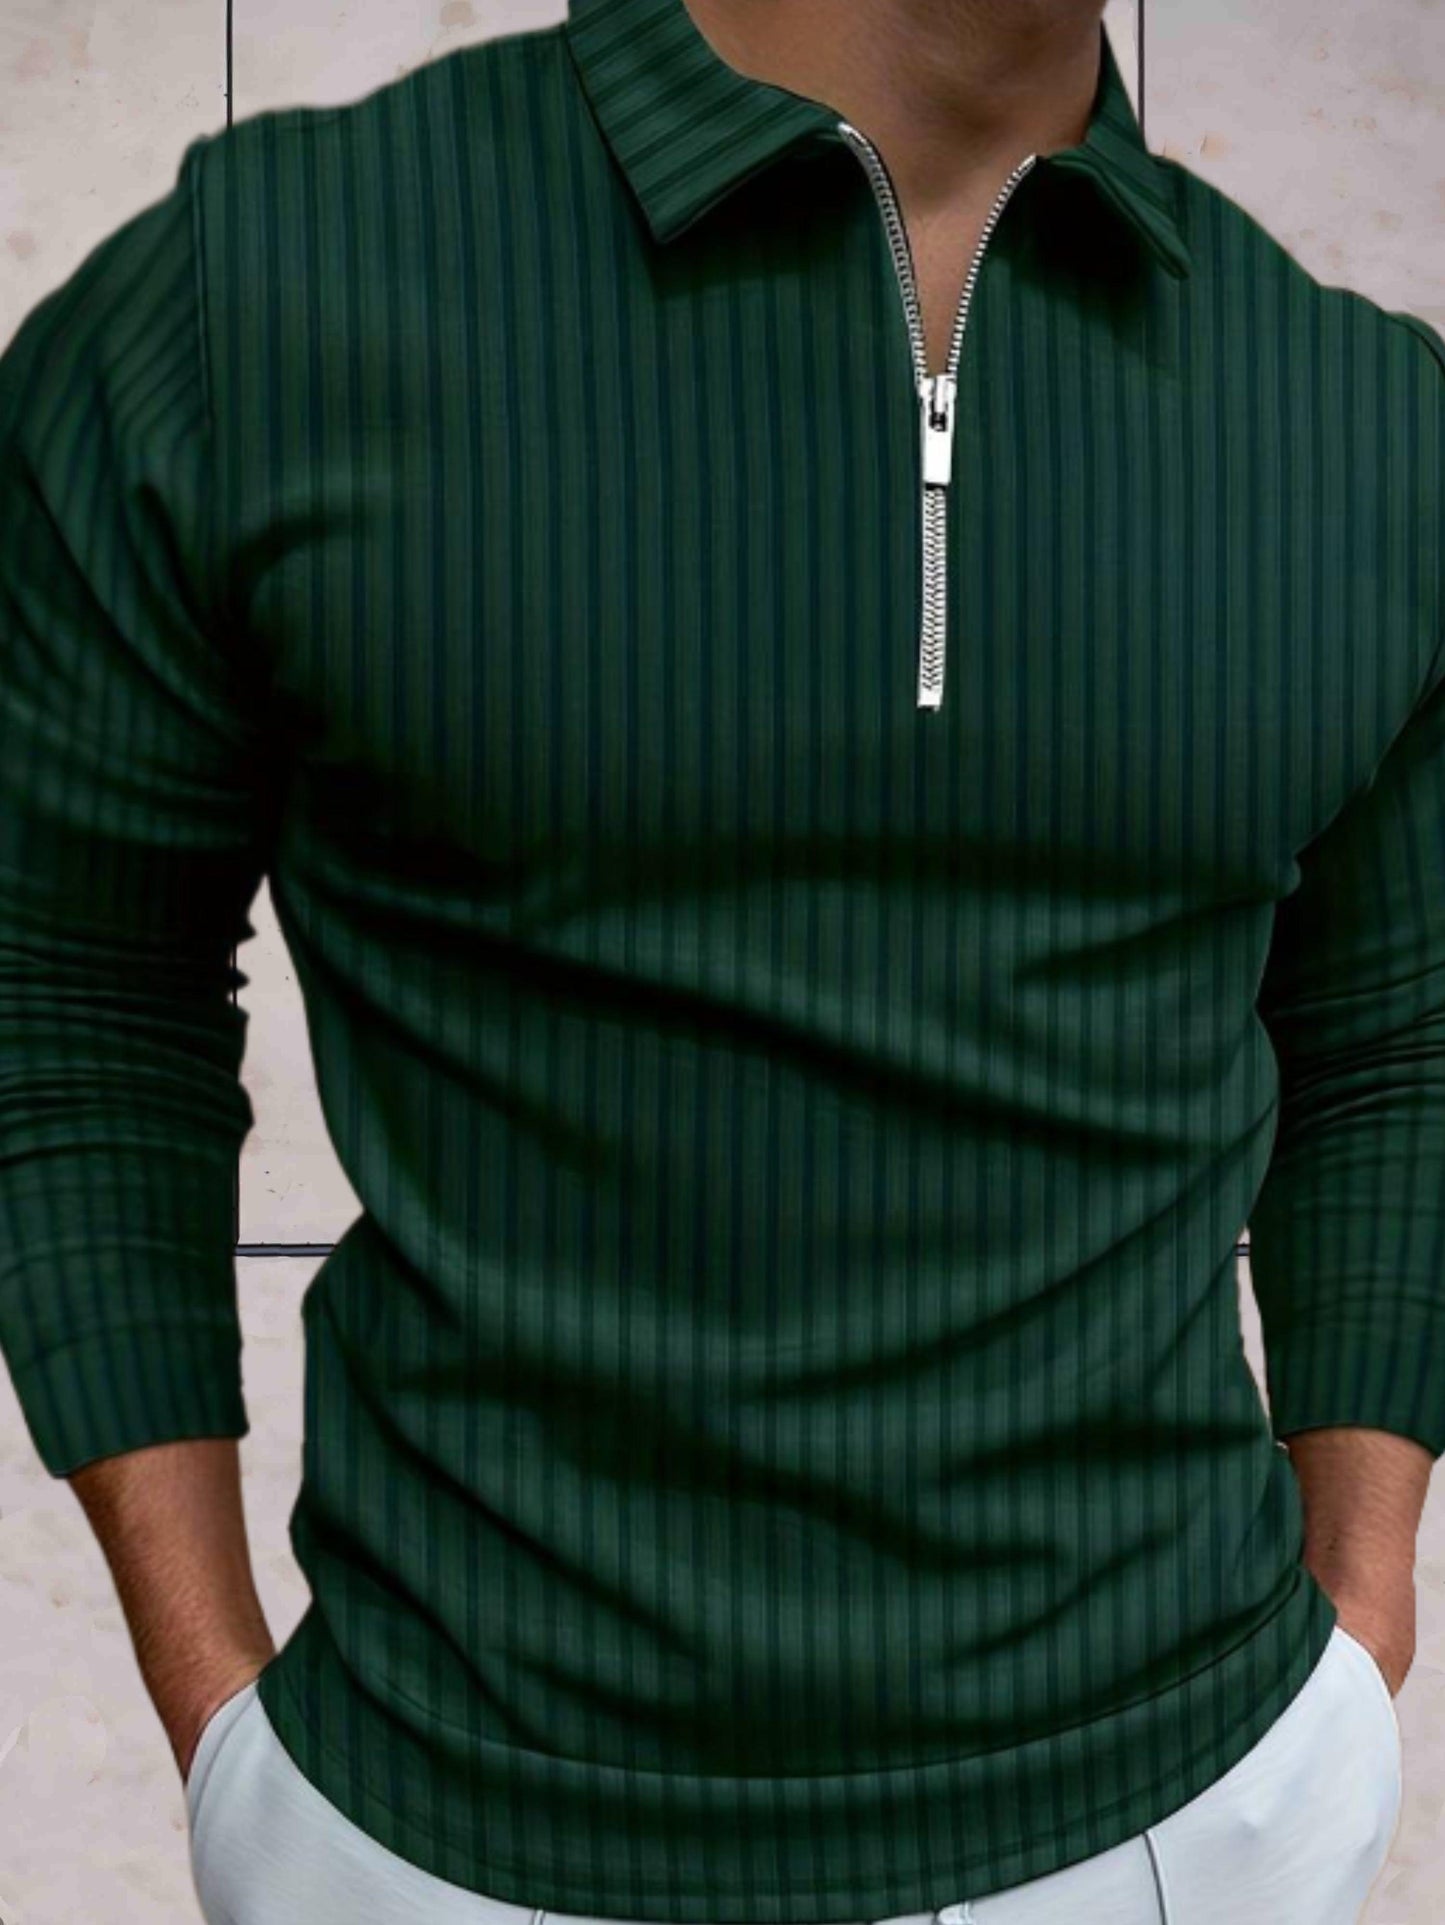 James - Winter warme trui zipper en kraag comfortabel in meerdere kleuren - Sky-Sense